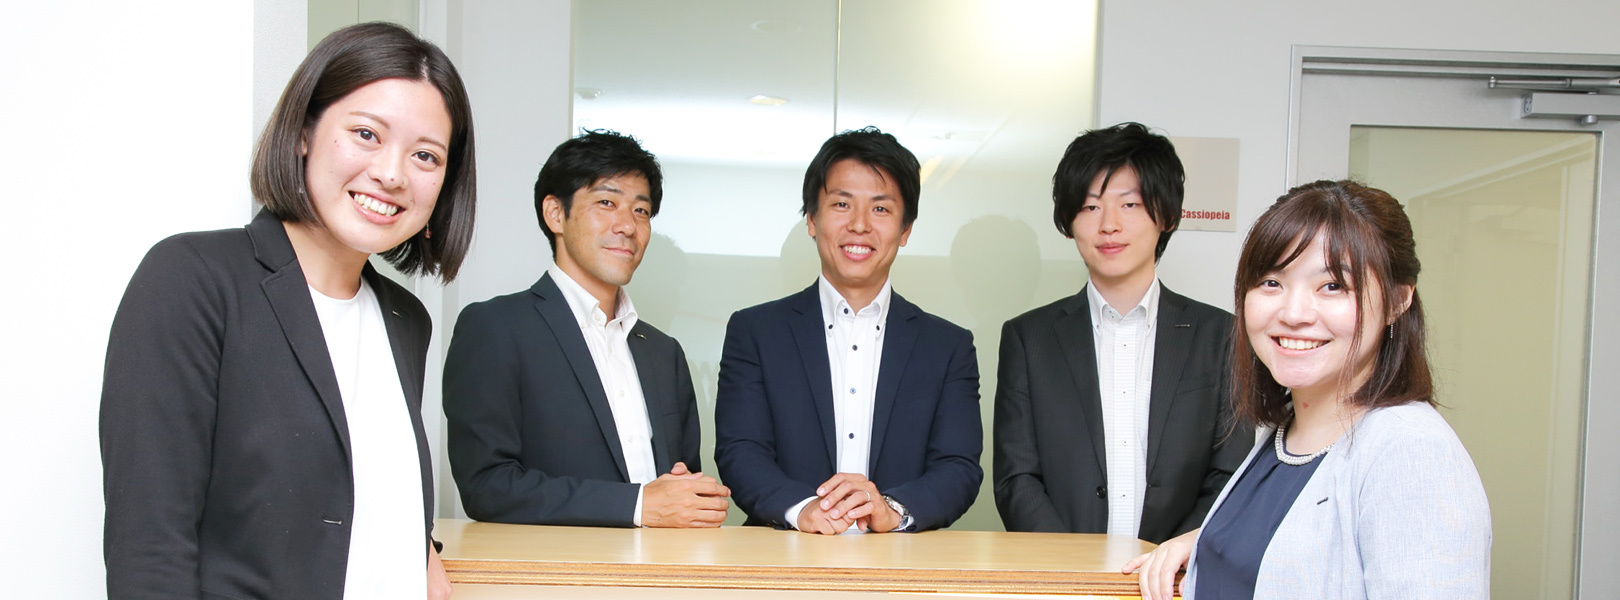 富士フイルムビジネスイノベーションジャパン 株式会社の中途採用 求人 転職サイトgreen グリーン